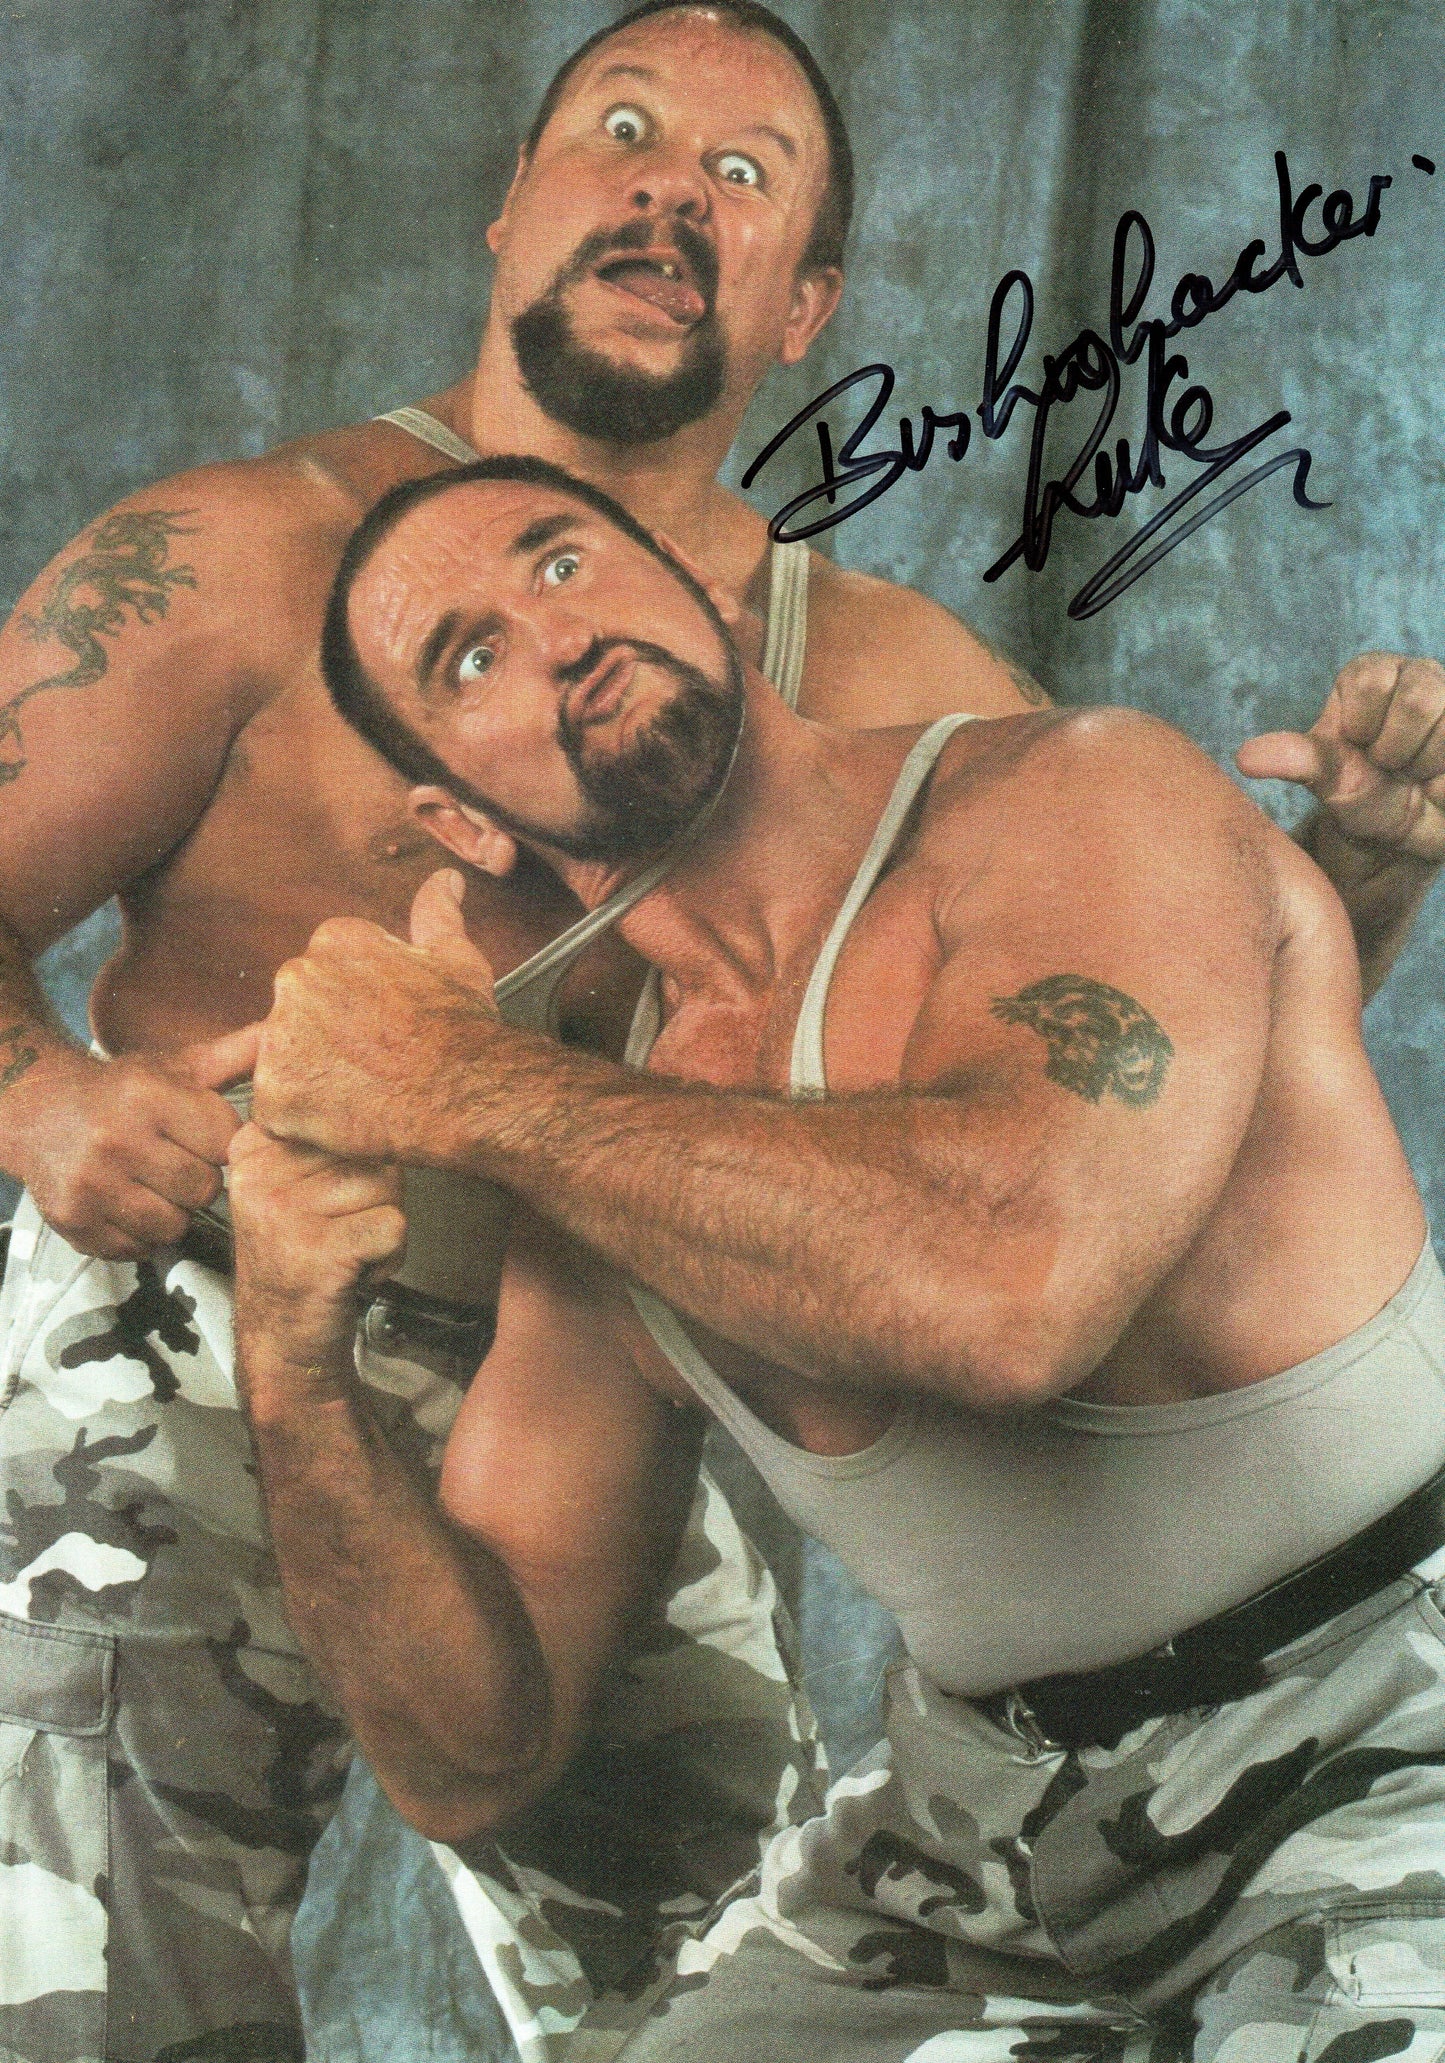 The Bushwhackers Luke WWF/WWE Signed Photo